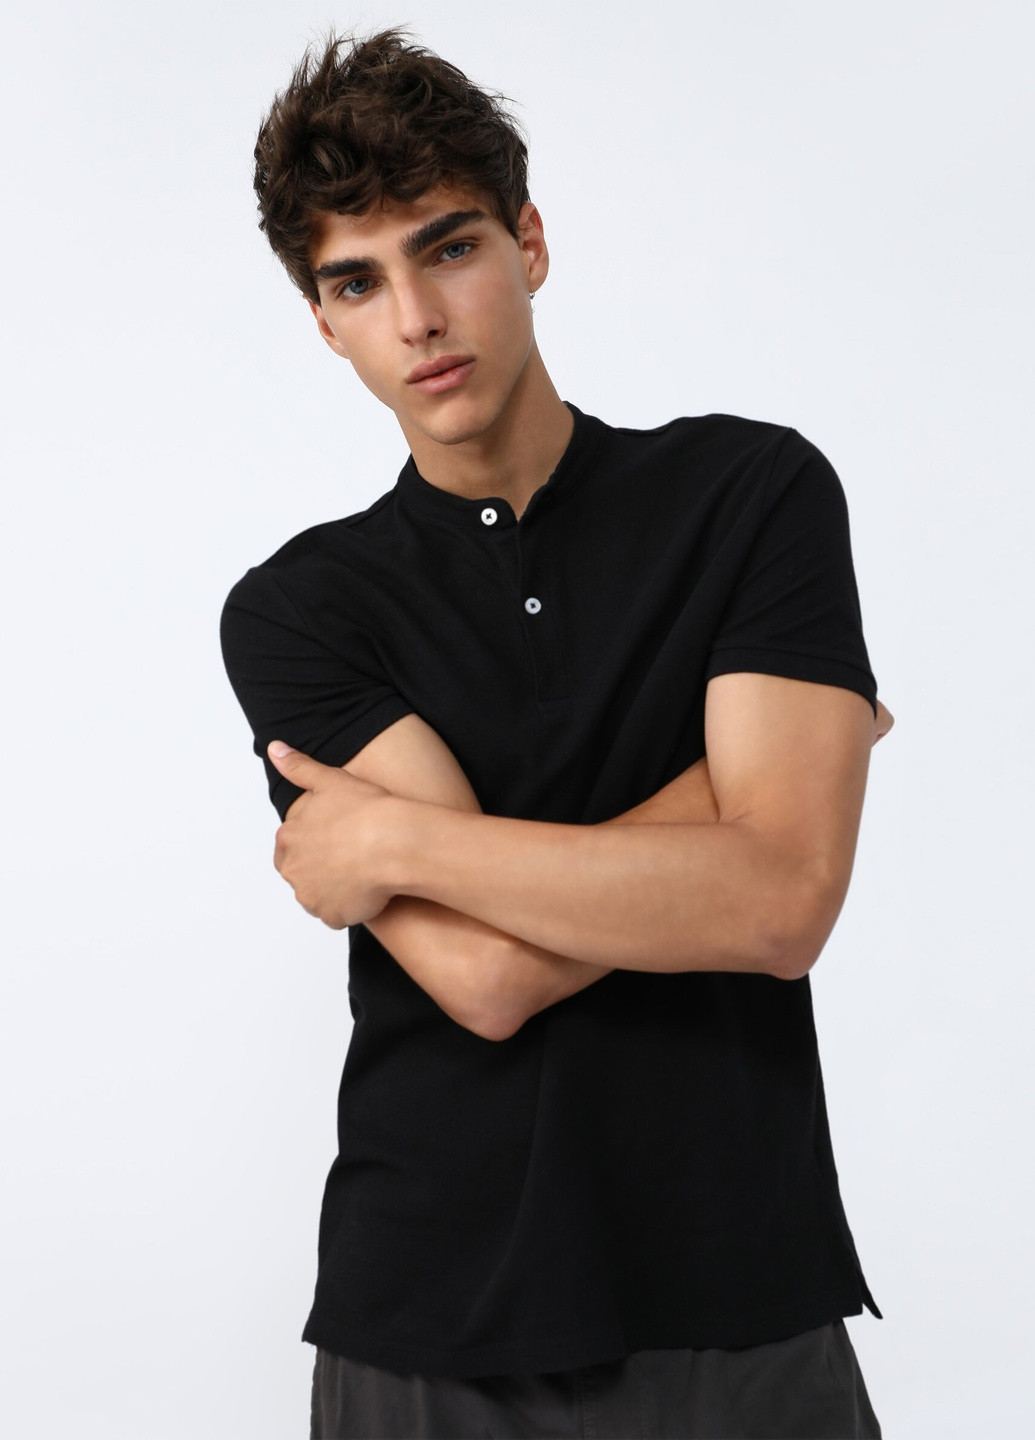 Черная футболка-мужская футболка поло l размер черная 5102514800 для мужчин Lefties однотонная